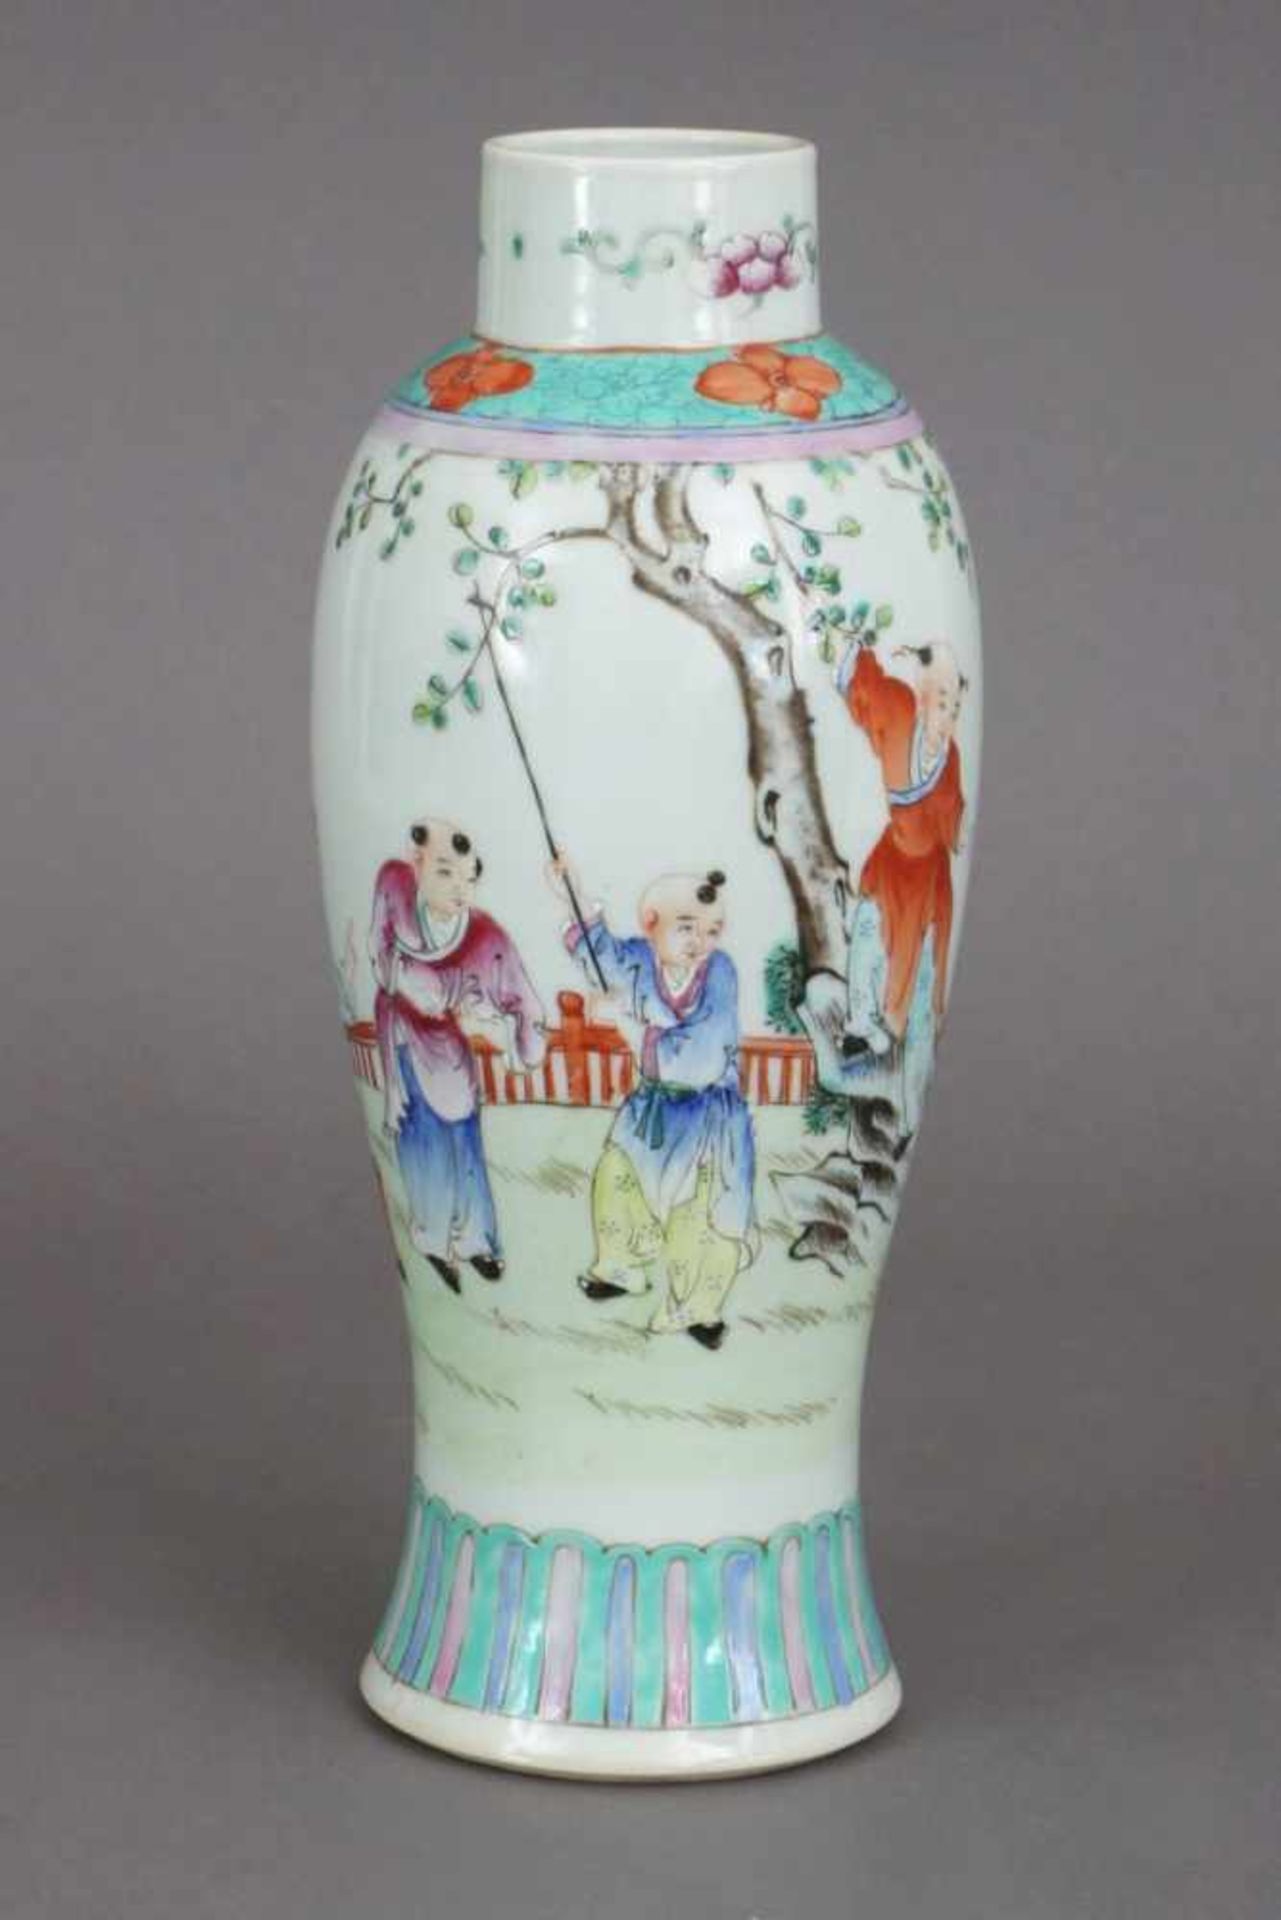 Chinesische famille-rose VasePorzellan, Qing Dynastie, schlanker, ovoider Korpus, umlaufend